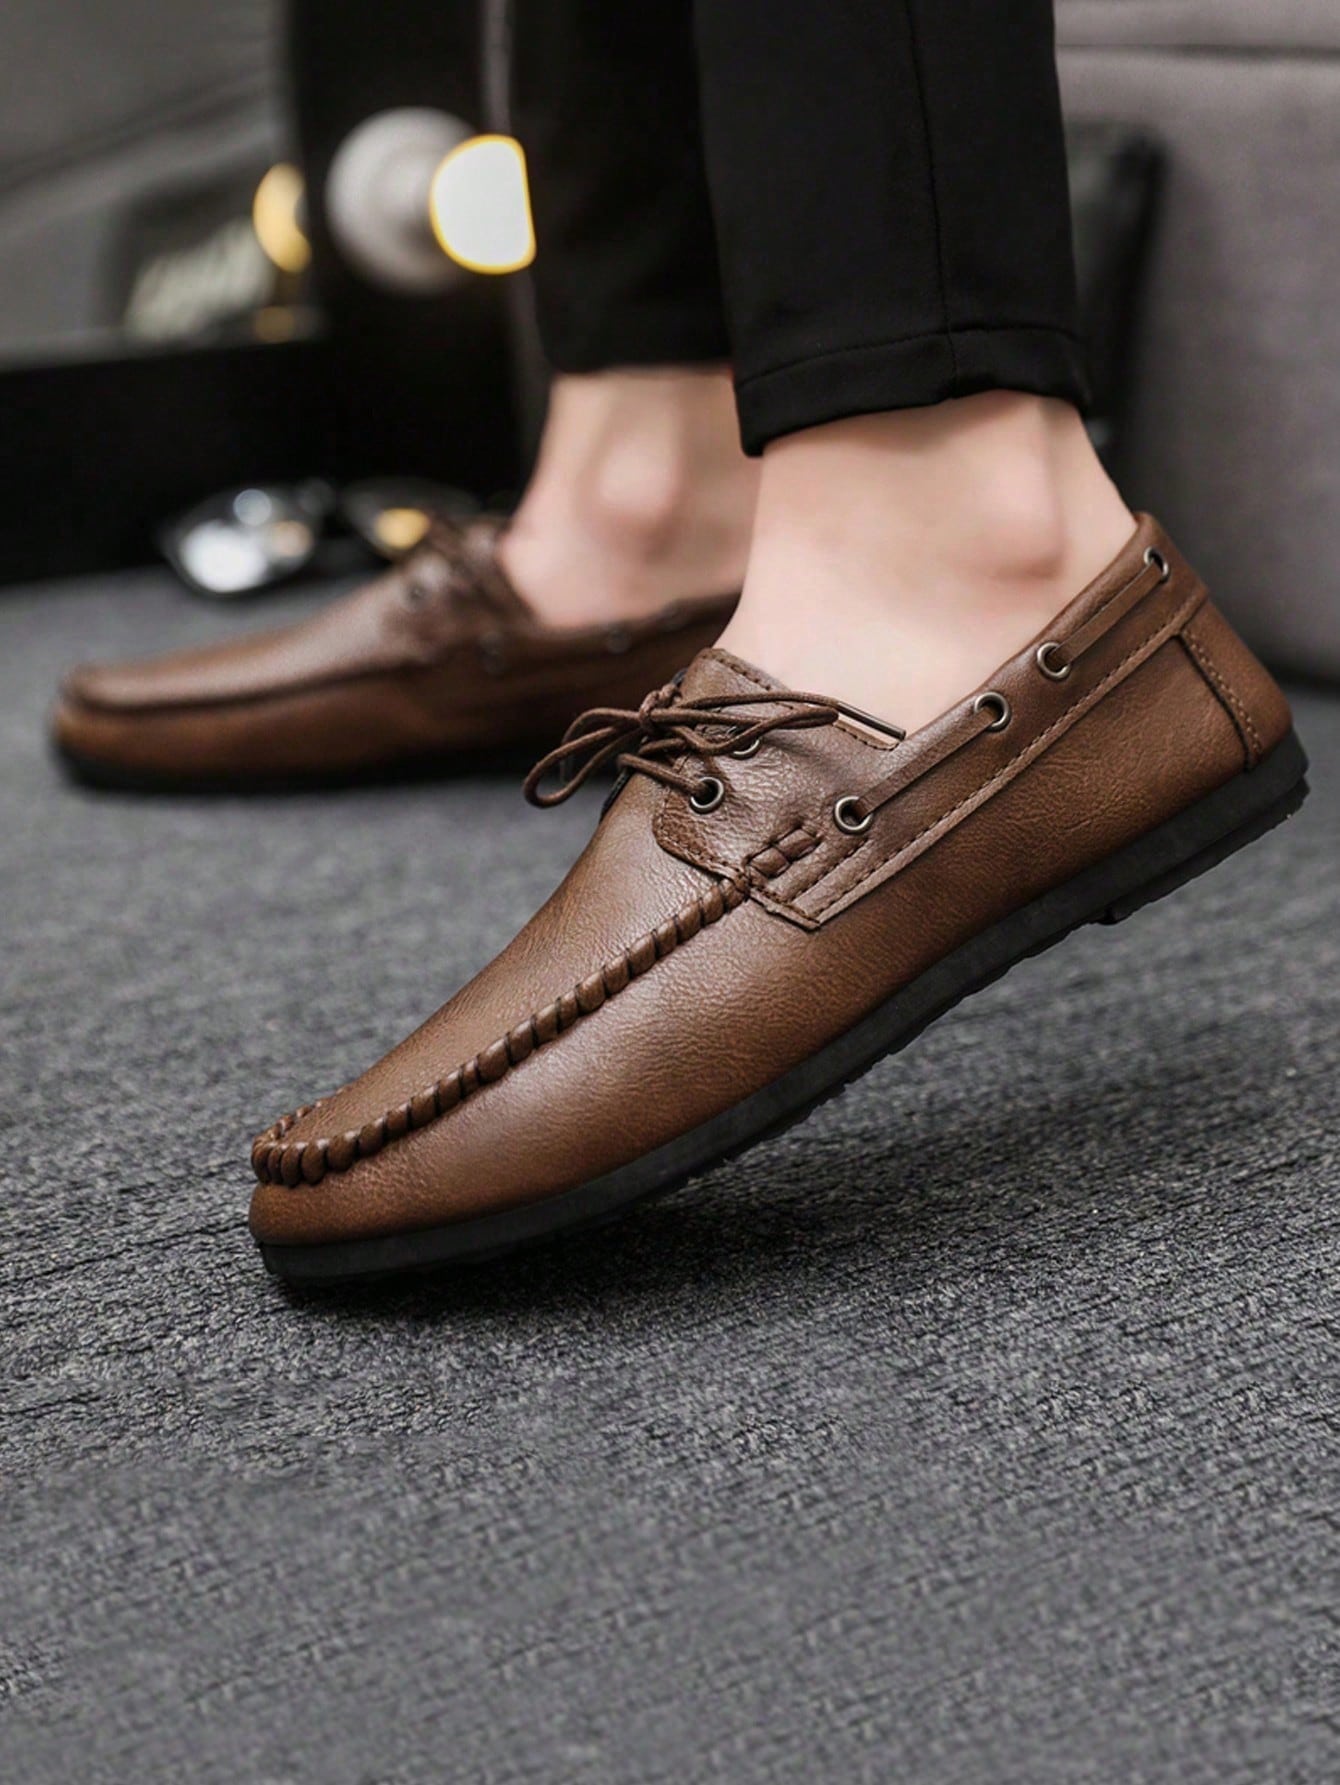 Официальные повседневные кожаные туфли в британском стиле на шнуровке для мужчин, коричневый красные свадебные туфли для мужчин итальянские брендовые элегантные туфли для мужчин модные вечерние туфли для мужчин формальные туфли